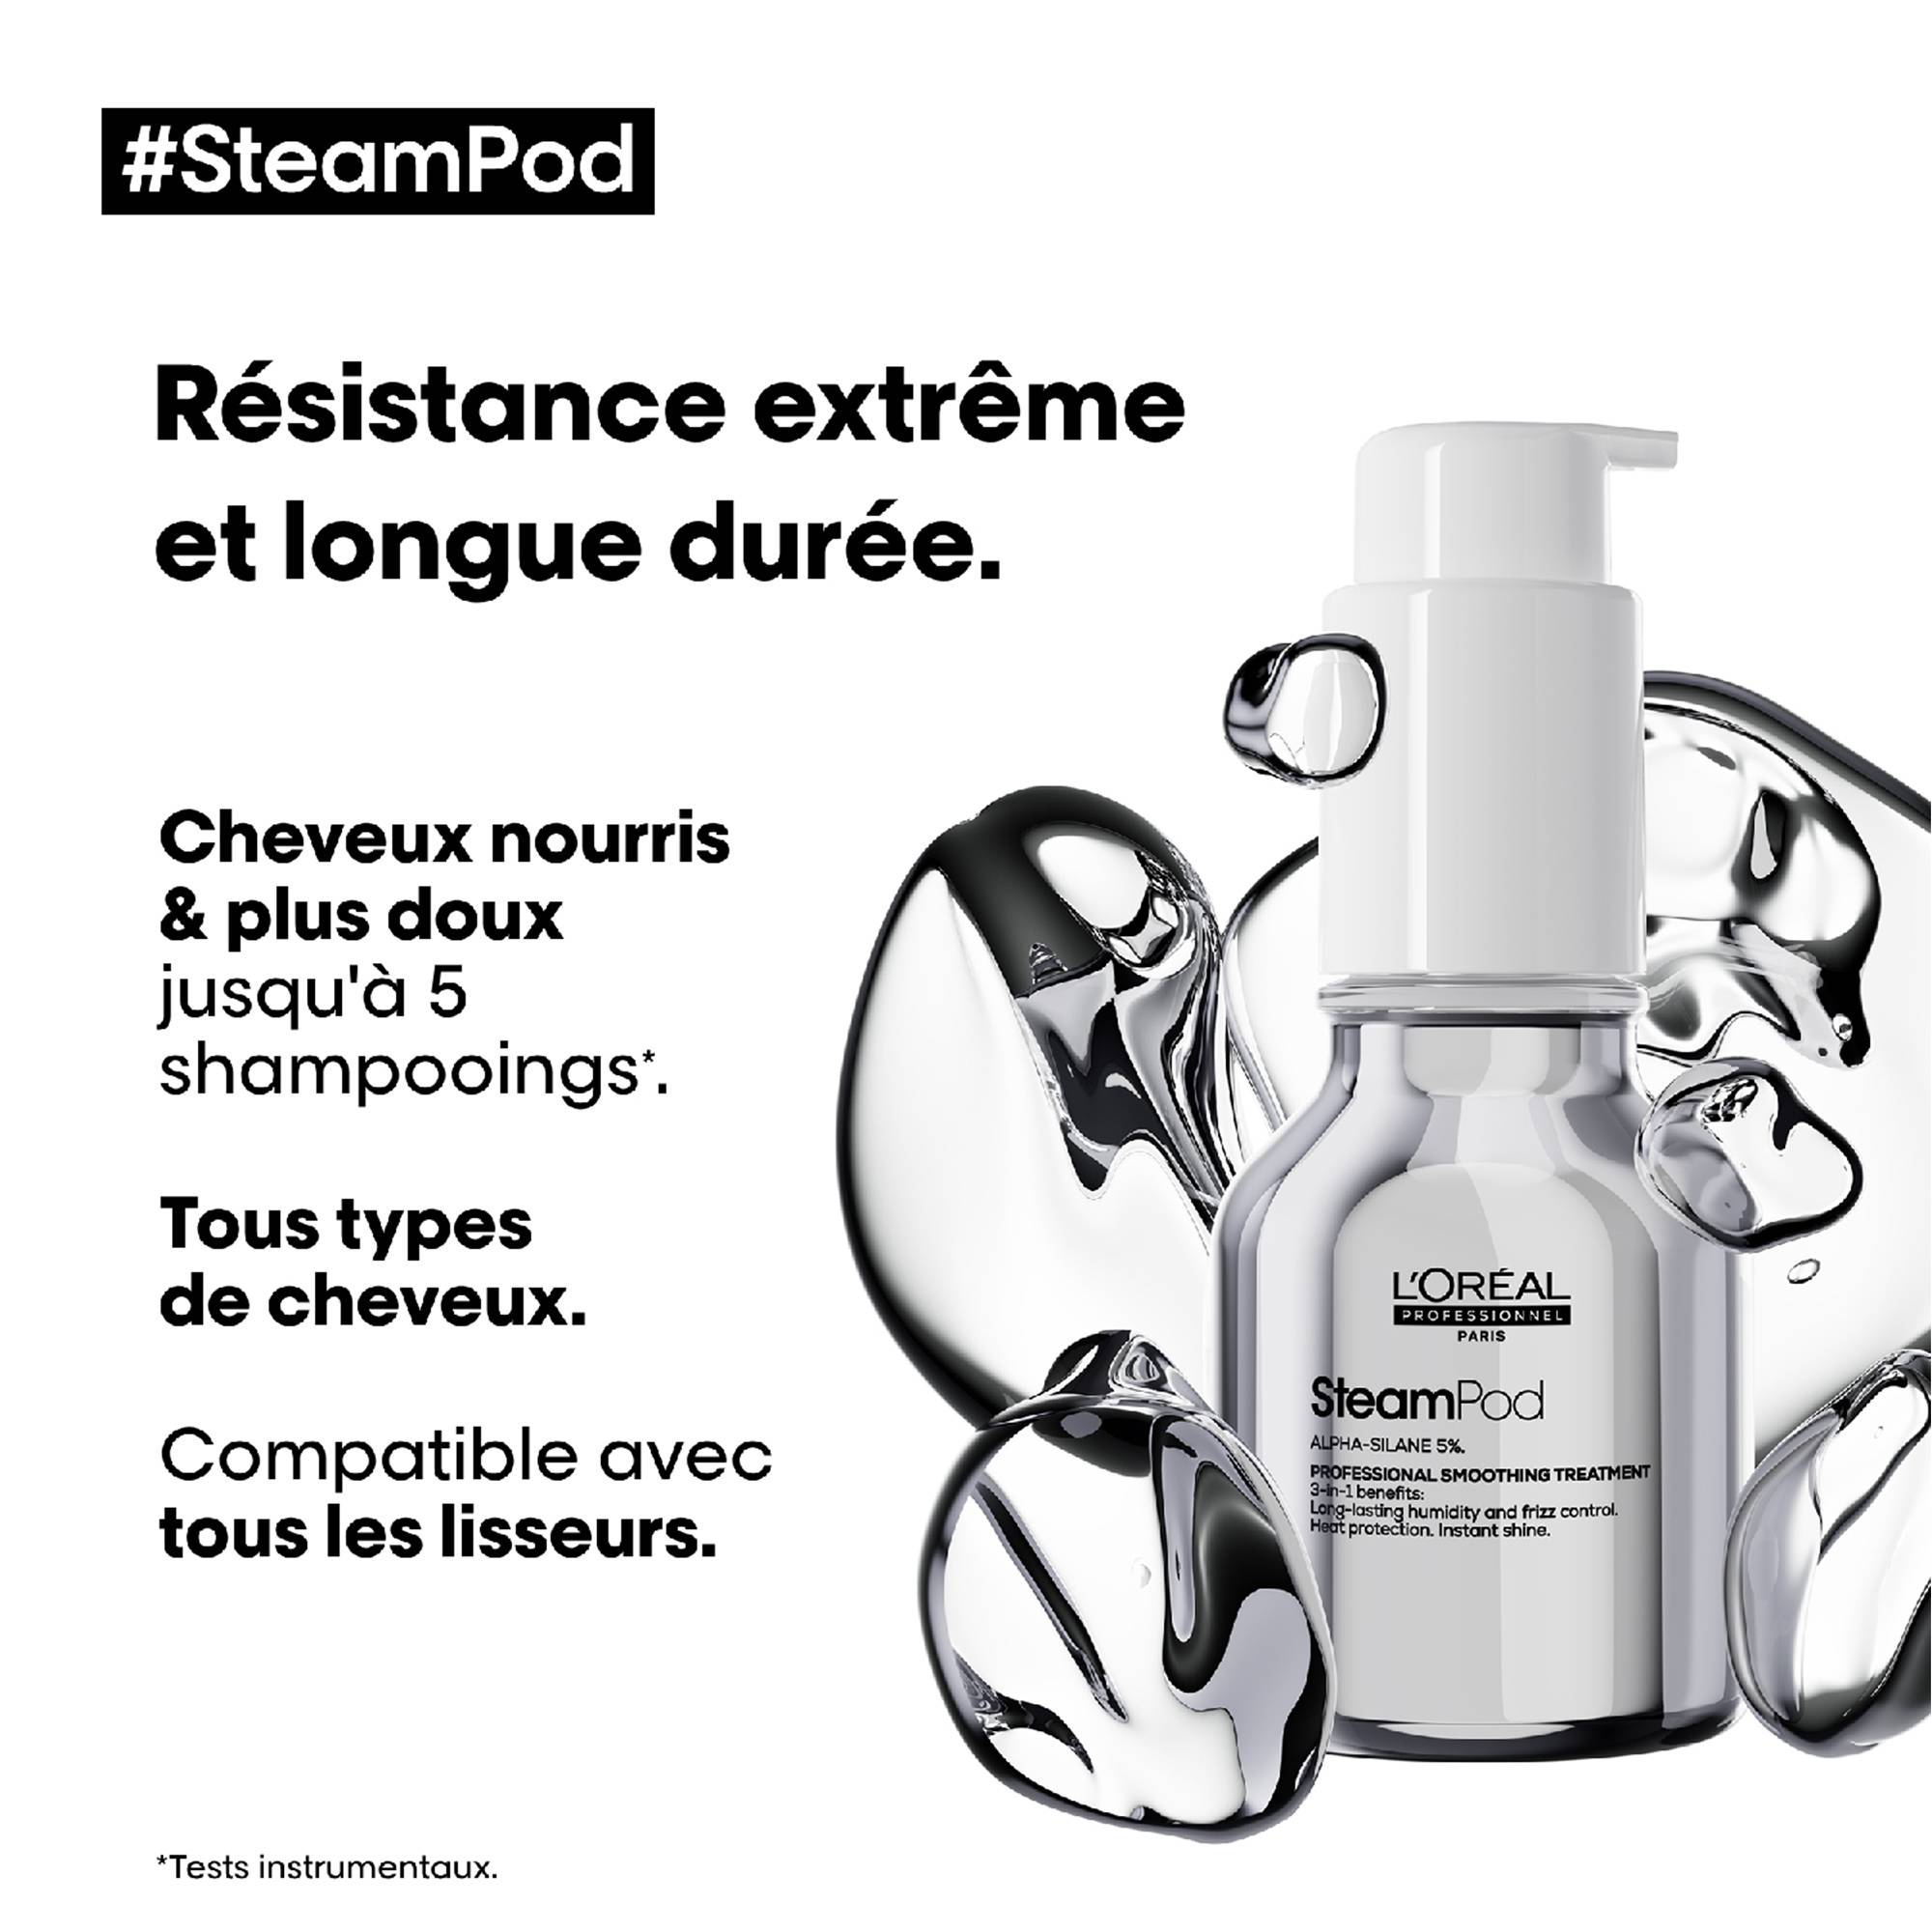 Soin lissant professionnel SteamPod de la marque L'Oréal Professionnel Contenance 50ml - 3